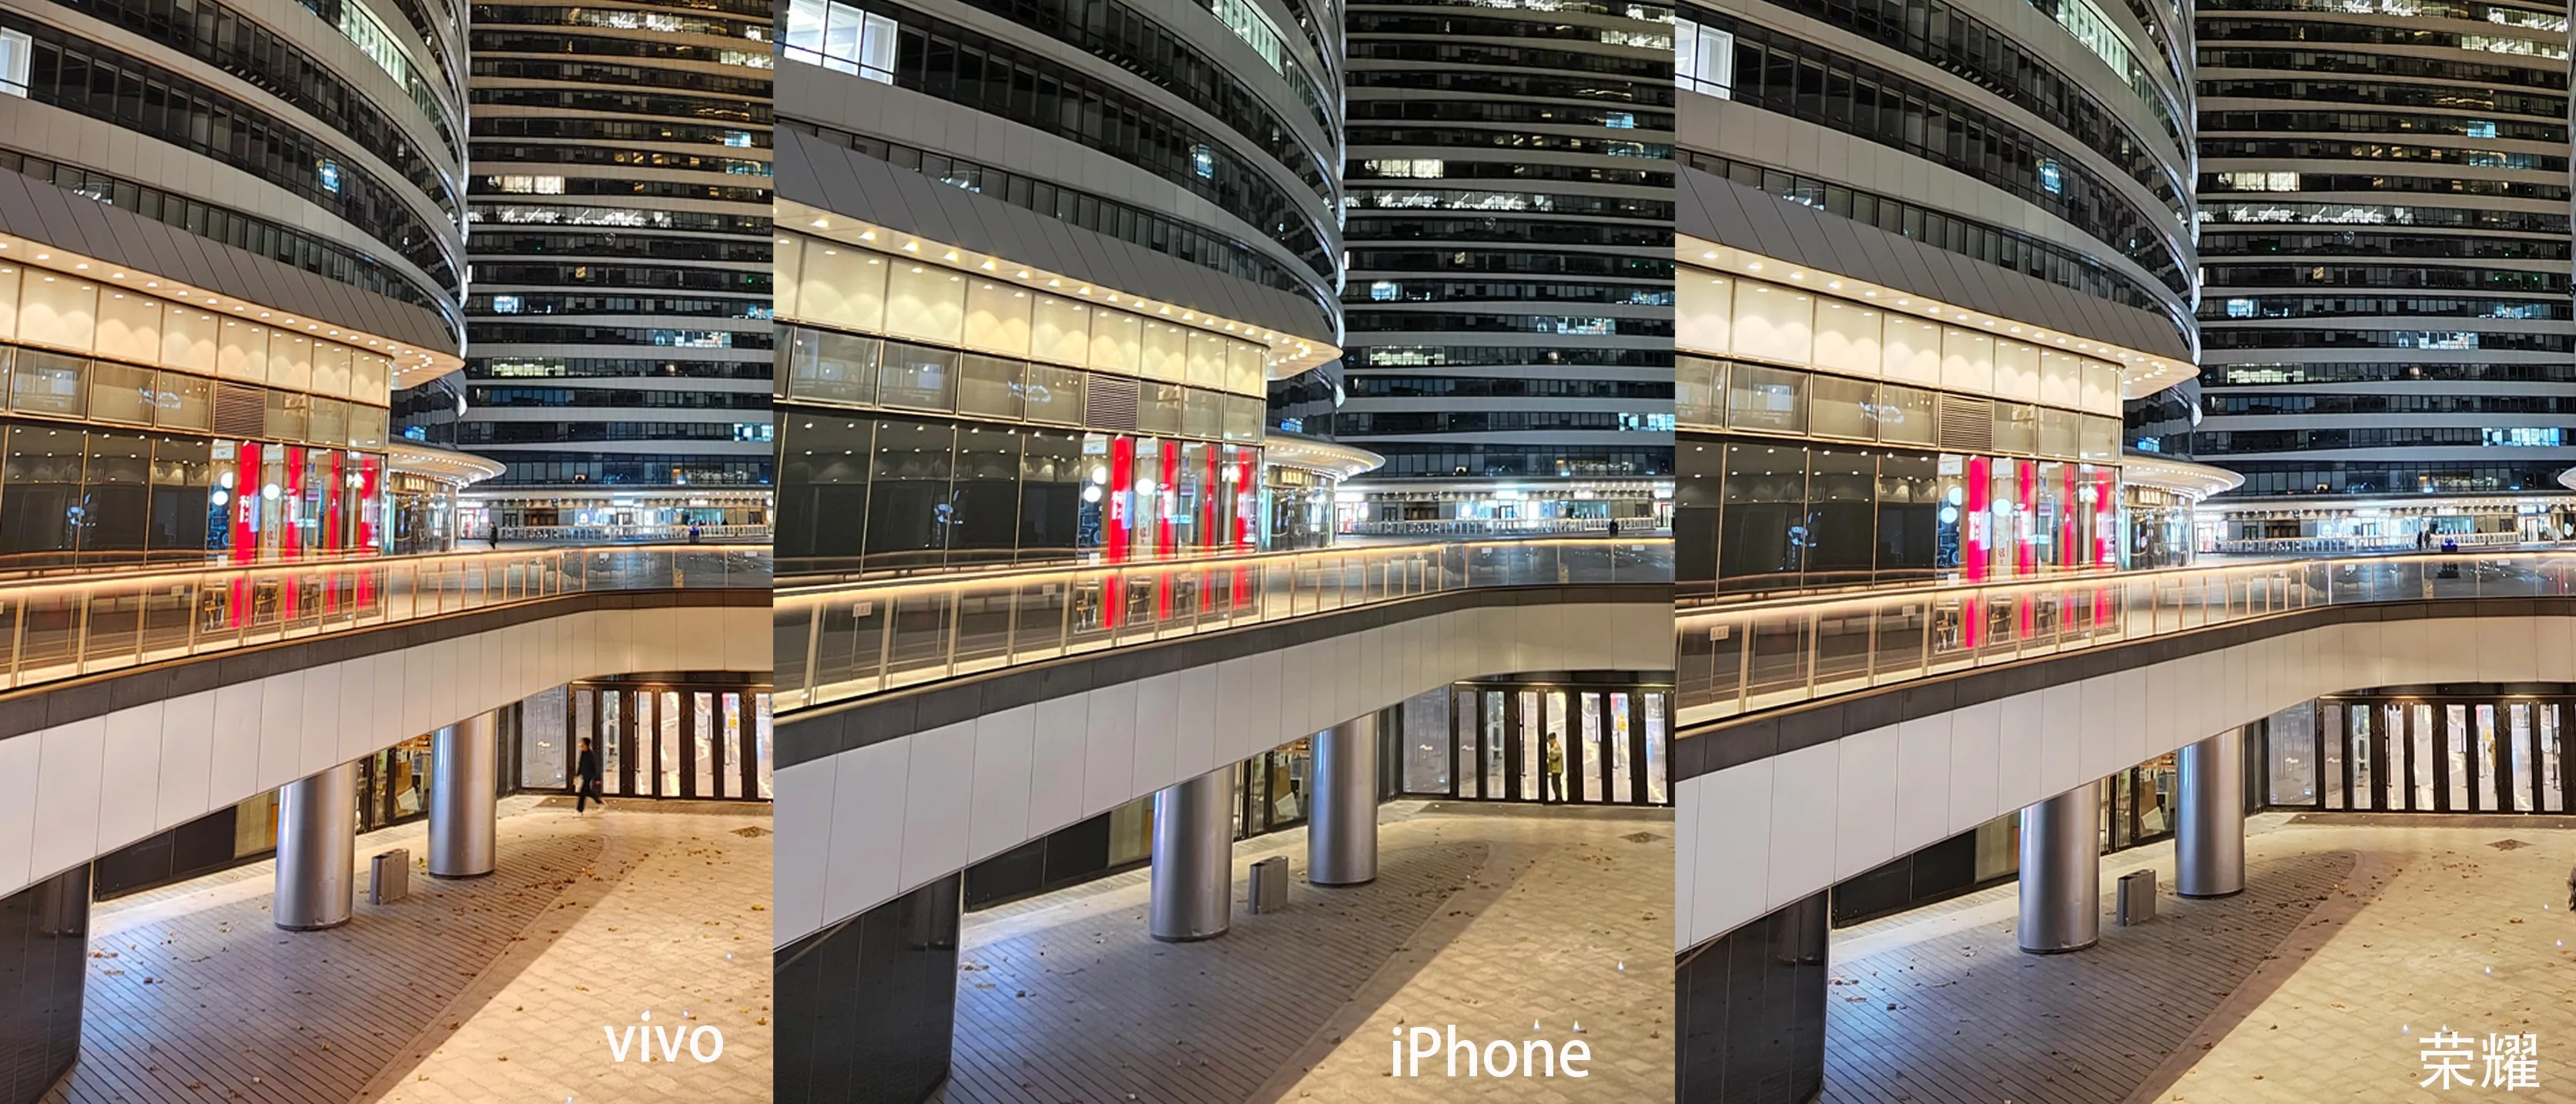 荣耀/vivo/iPhone 夜景影像对比实测